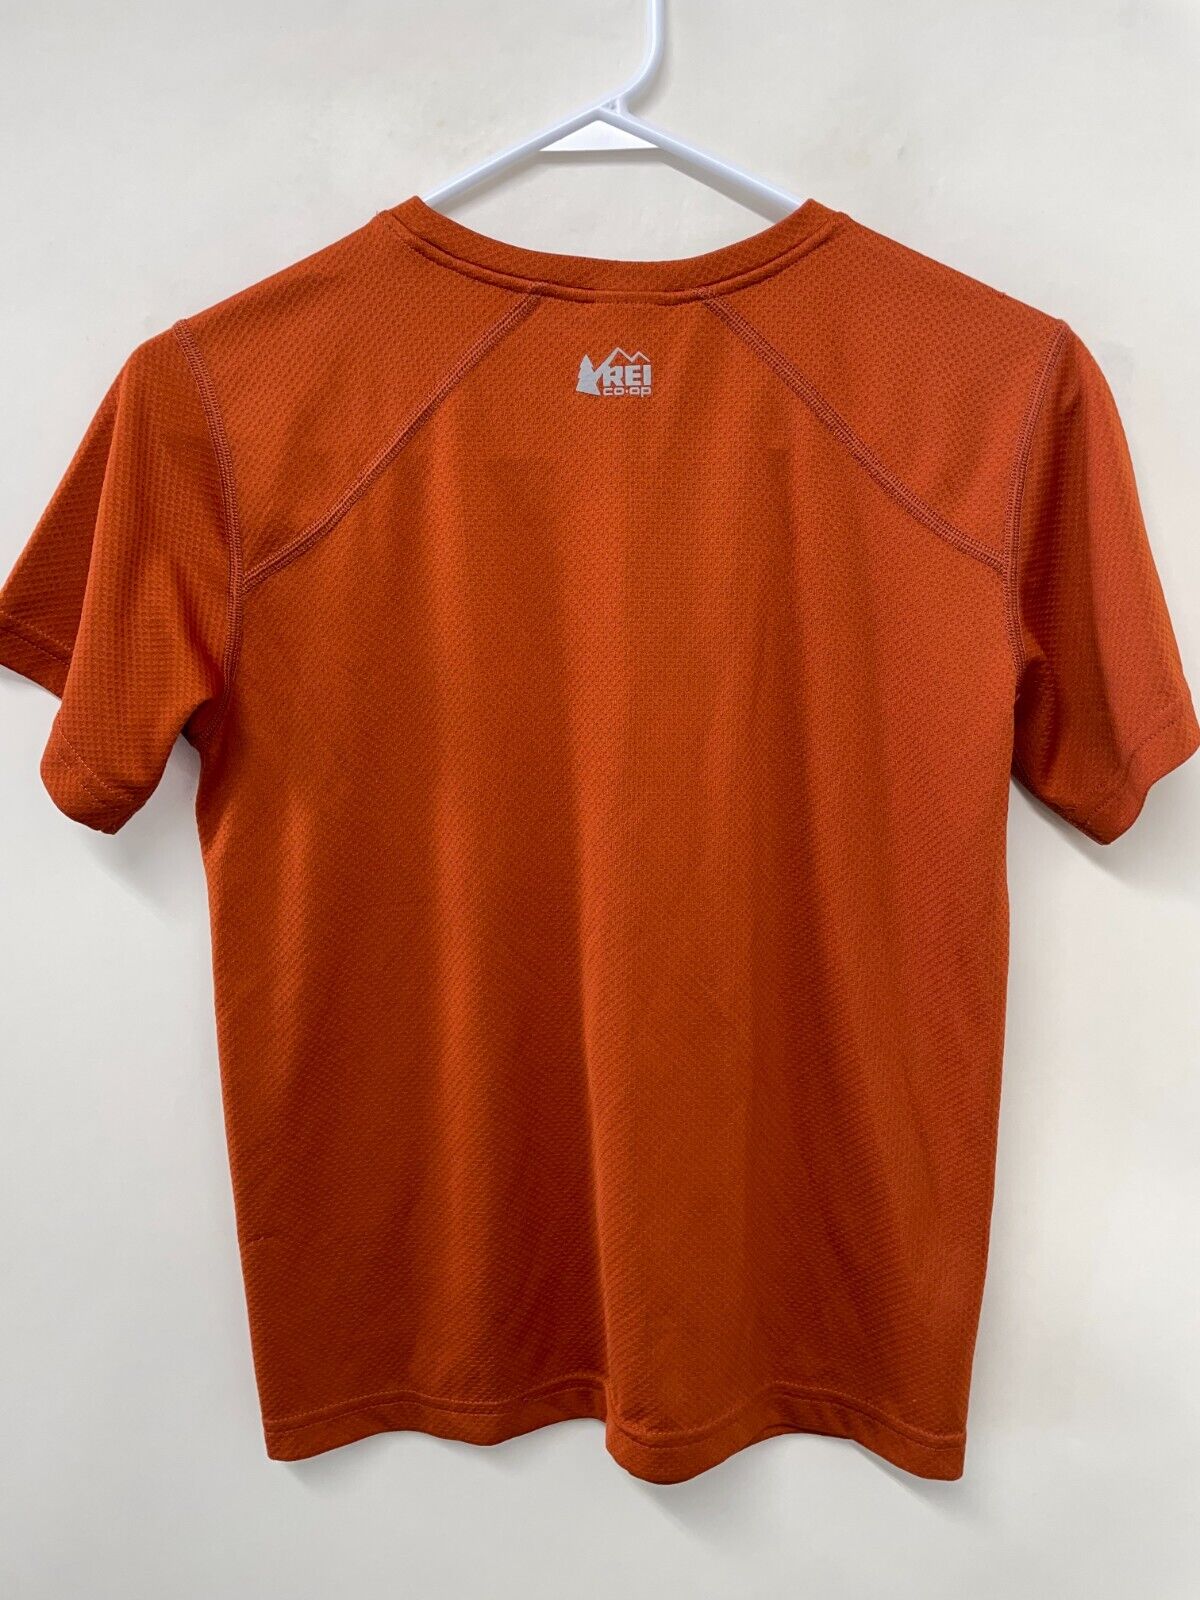 REI CoOp Kids L 14-16 A Wilderness Spirit Born in 1938 Shirt Orange Short Sleeve